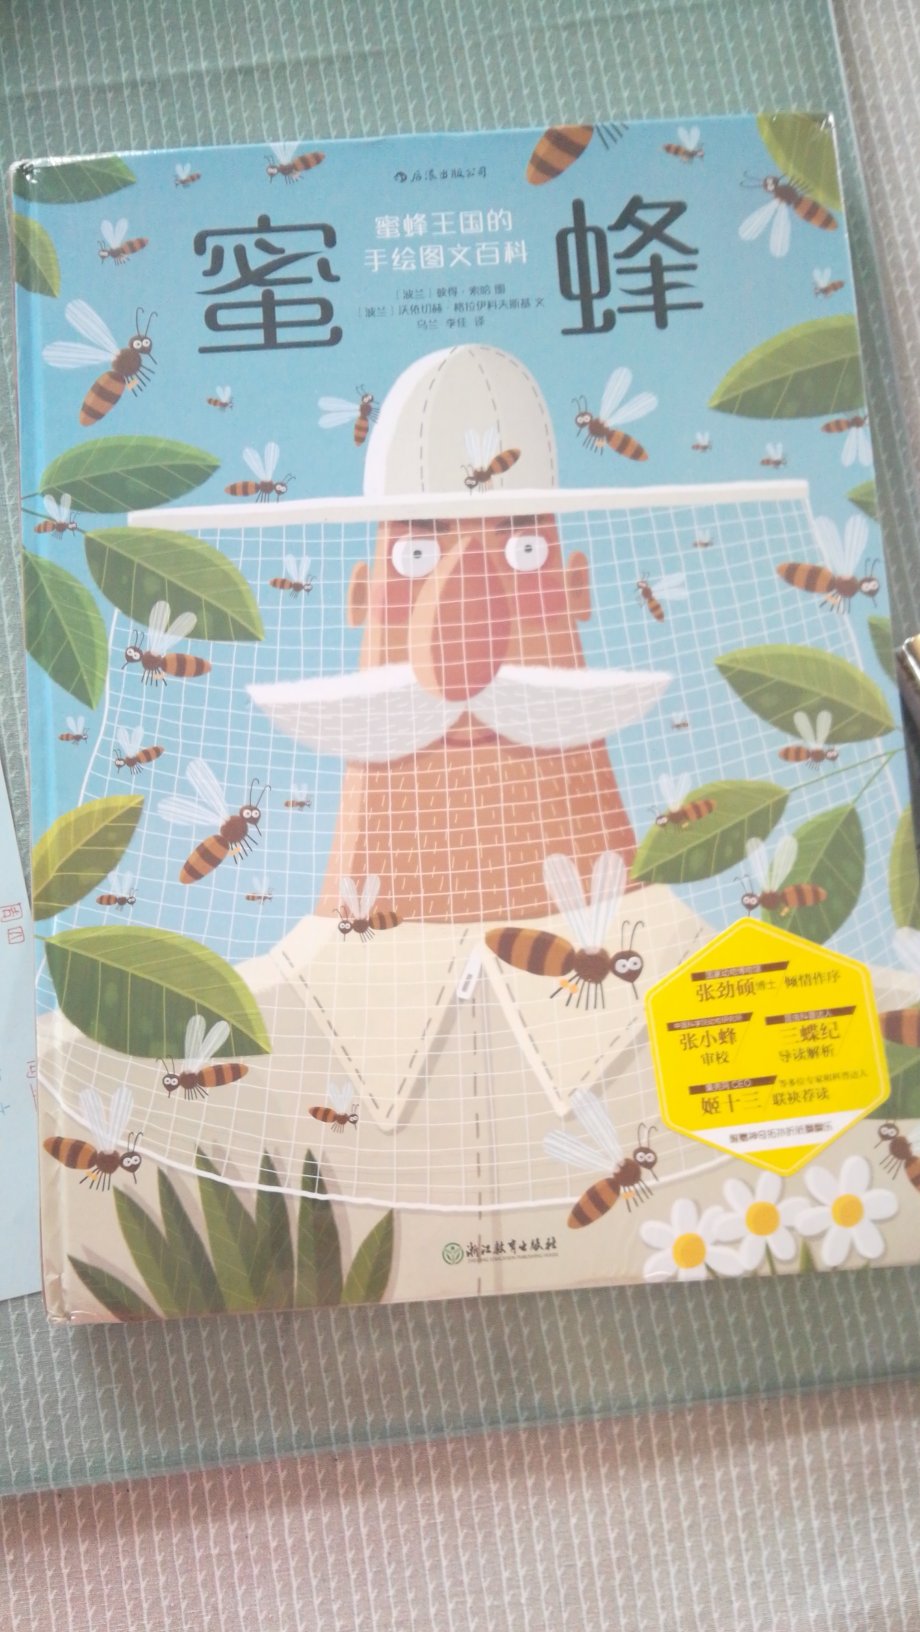 这本书这么美，第一功臣是绘者彼得·索哈，他是波兰的一位设计师和插画家，还是养蜂人的儿子。大概因为有这层关系，所以画出来的作品透着一股认真又细致的劲儿。他用精美的画面，把孩子们带进了一个奇妙的蜜蜂世界